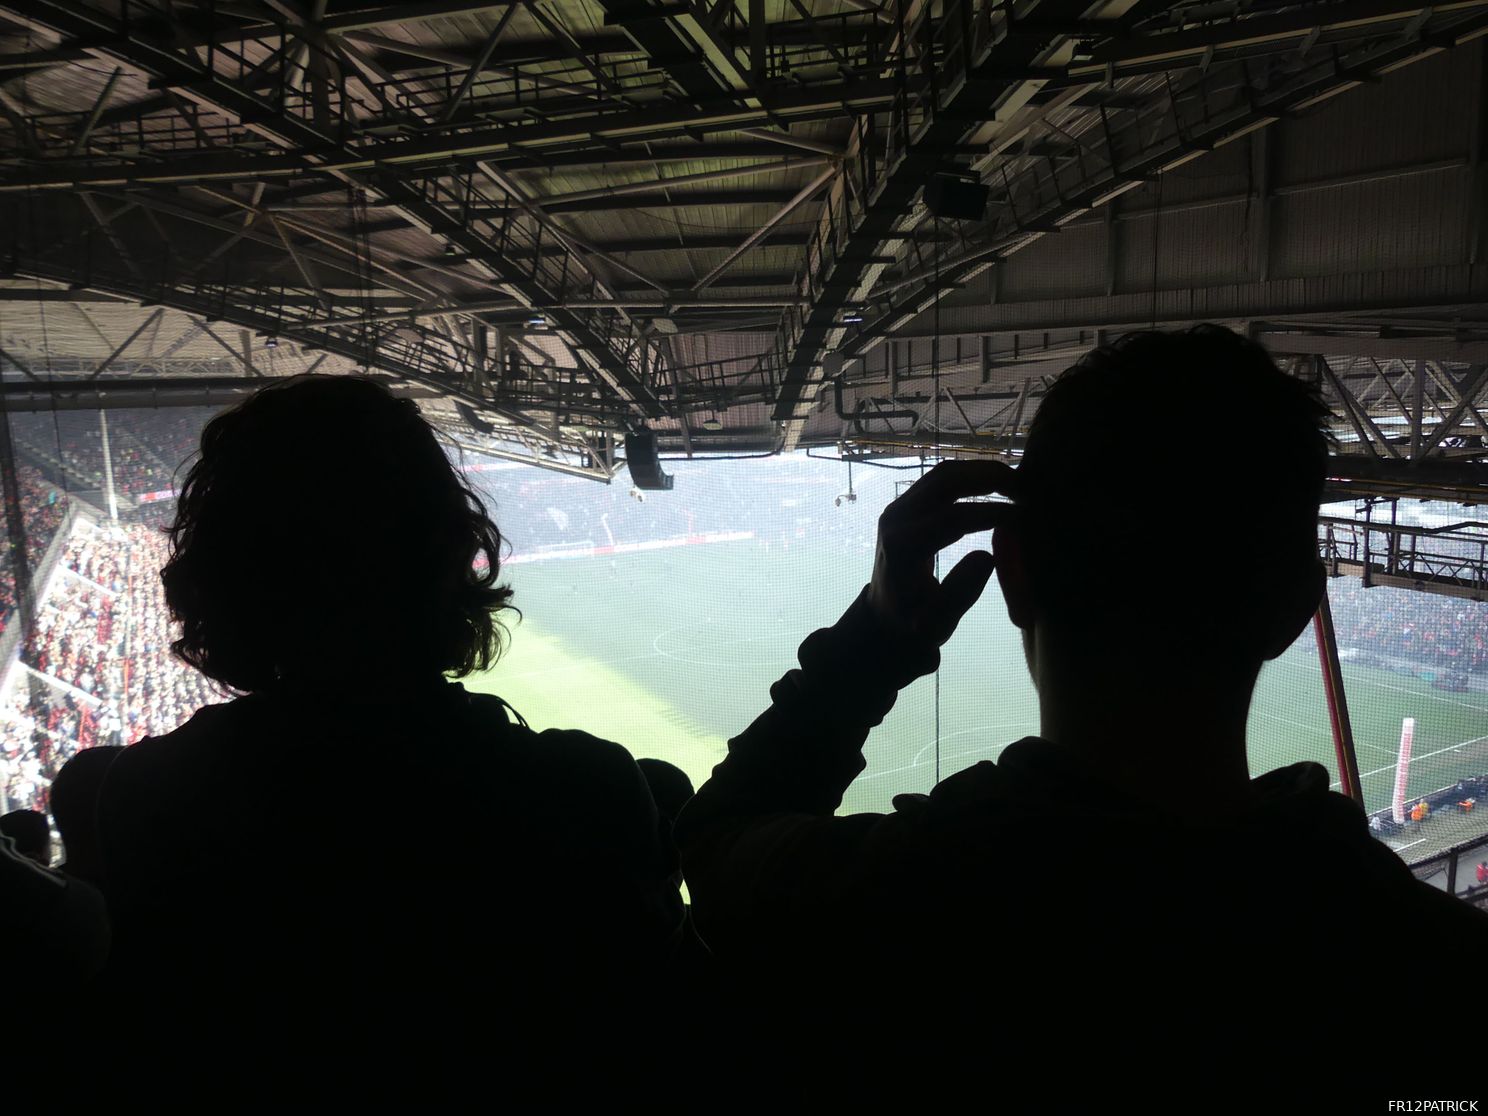 Fotoverslag PSV - Feyenoord online